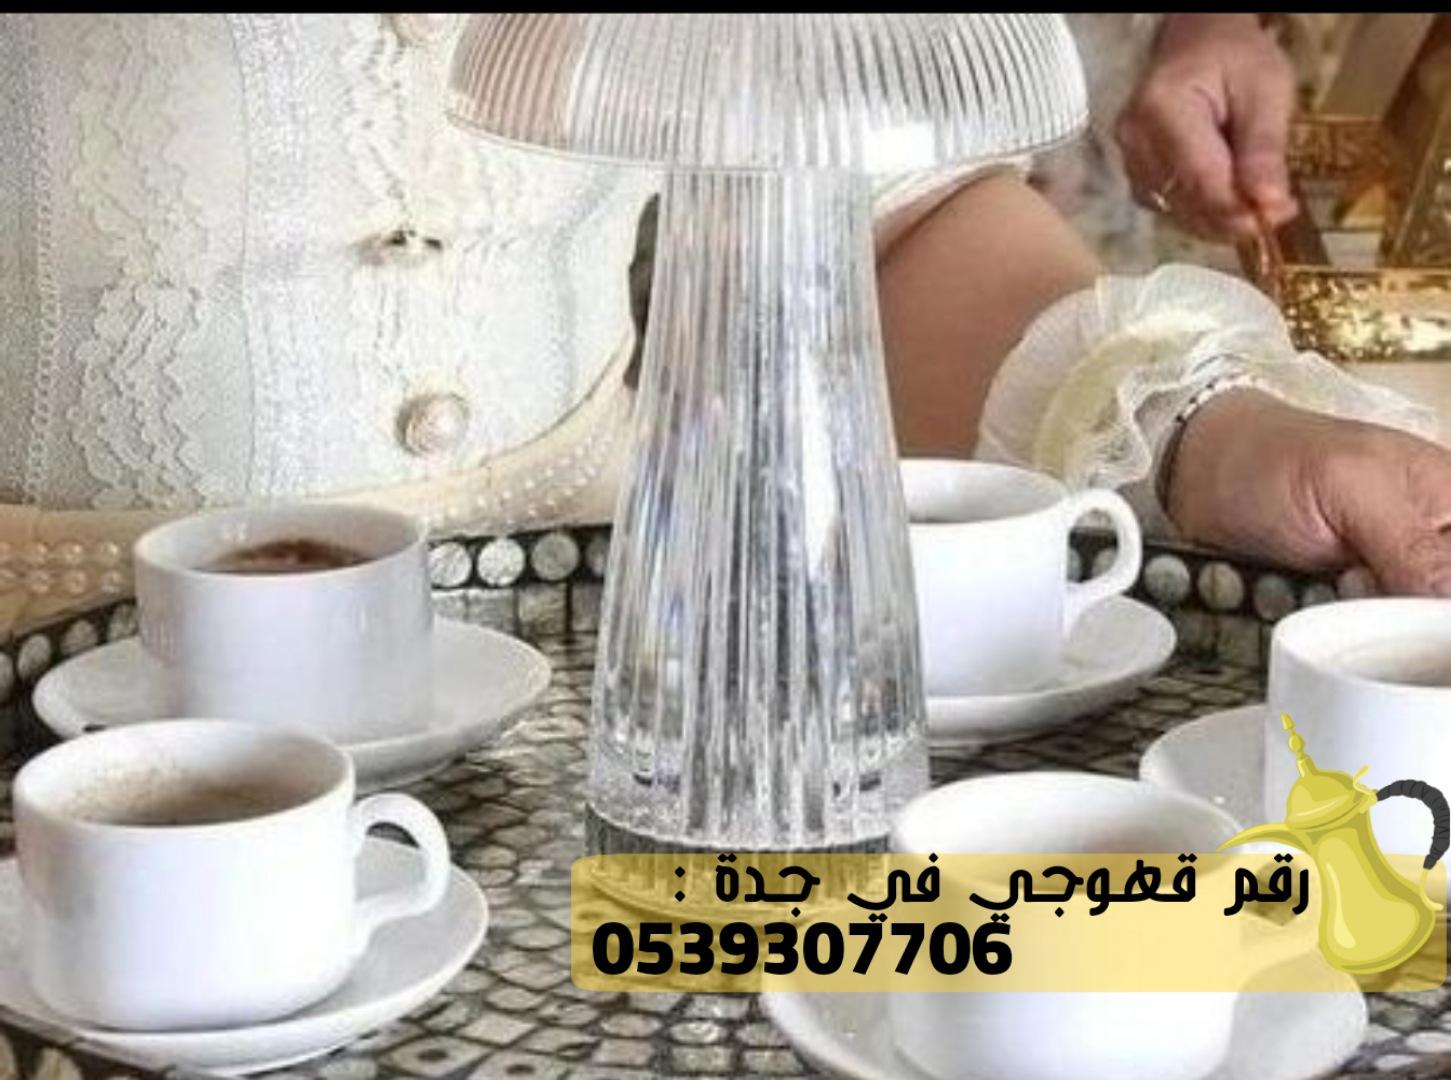 صبابات قهوة و صبابين قهوه في جدة,0539307706 281232442